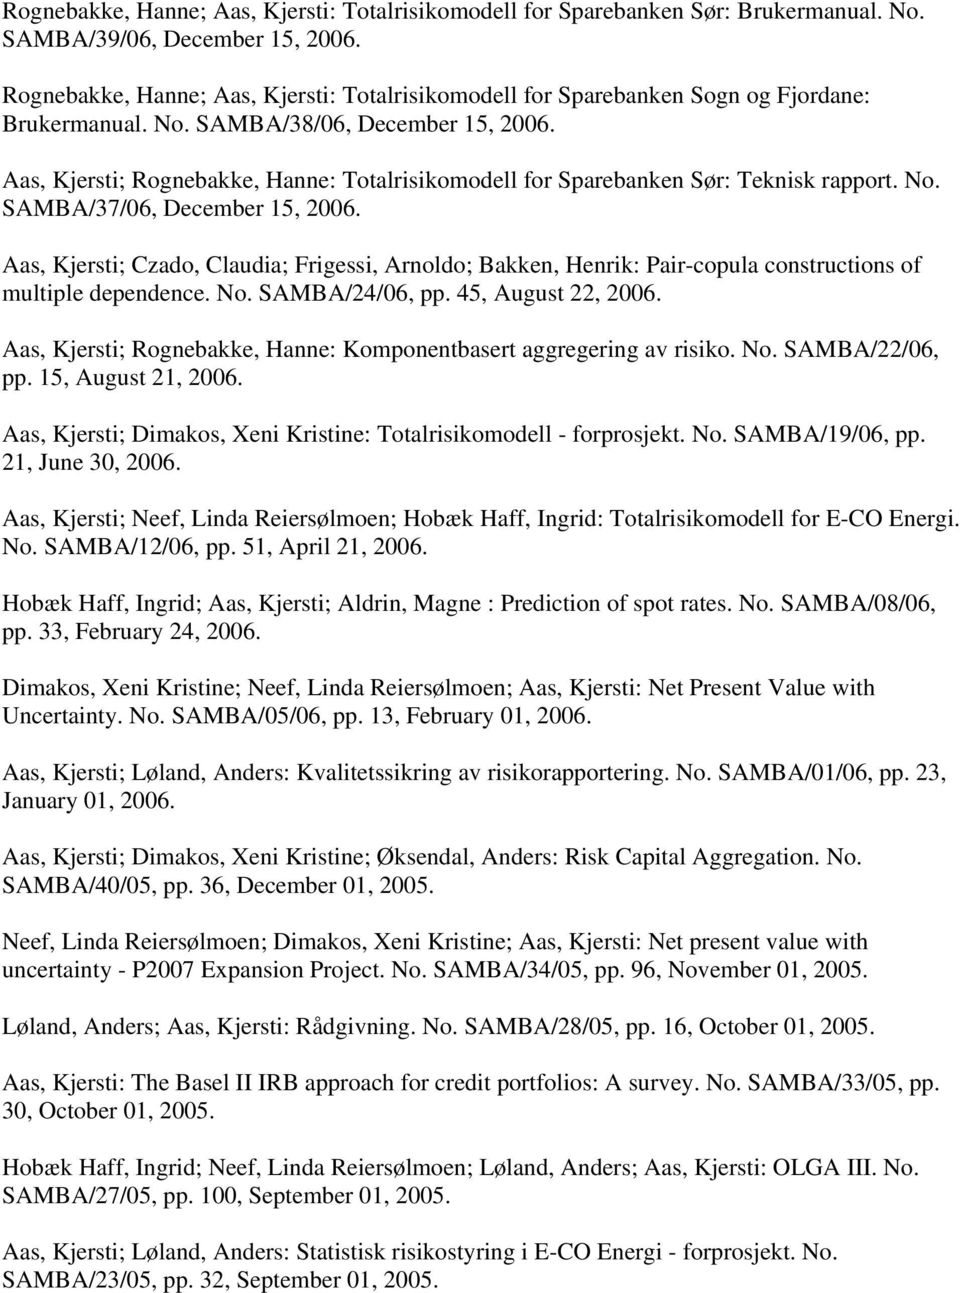 Aas, Kjersti; Rognebakke, Hanne: Totalrisikomodell for Sparebanken Sør: Teknisk rapport. No. SAMBA/37/06, December 15, 2006.